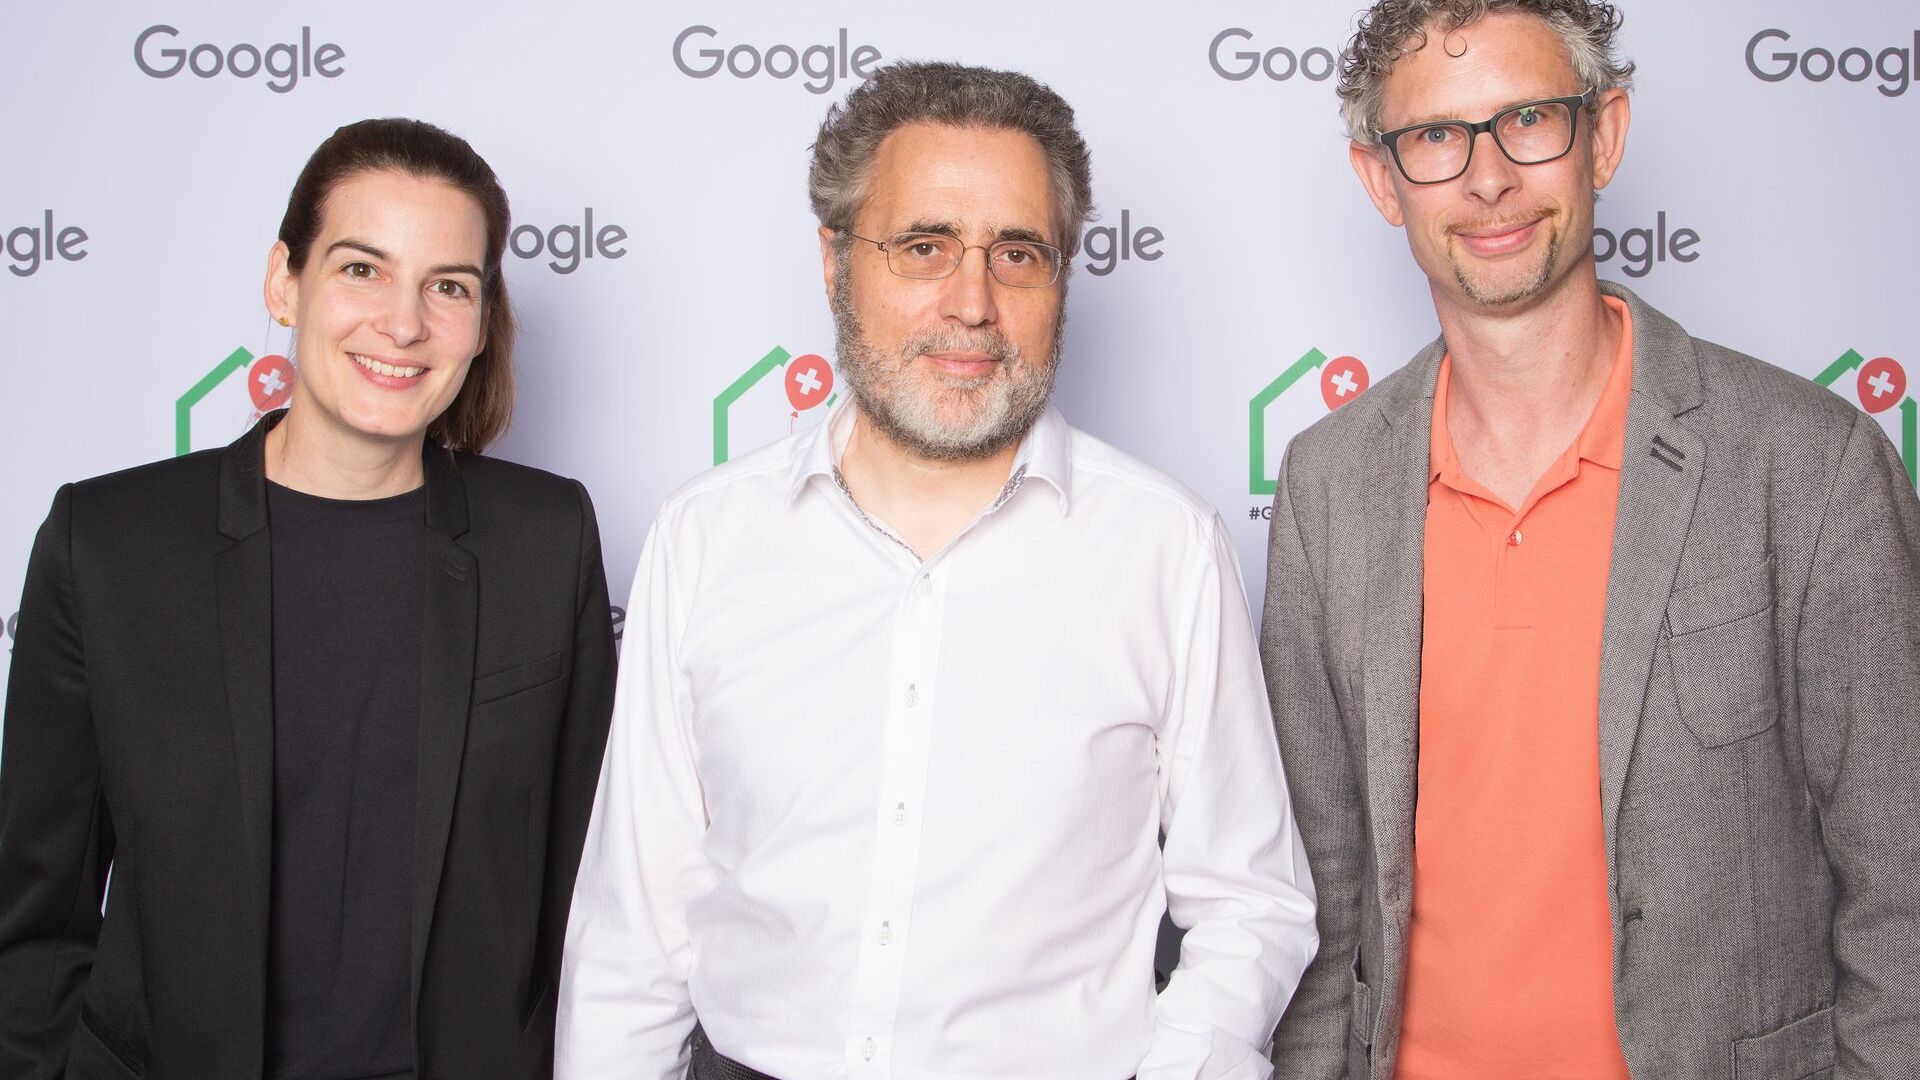 Urs Hölzle, viši potpredsjednik tehničke infrastrukture, i Pia De Carli i Samuel Leiser, medijski tim iz Švicarske, prisustvovali su službenom otvaranju Googleovog novog Campus Europaallee u Cirihu 27. juna 2022.